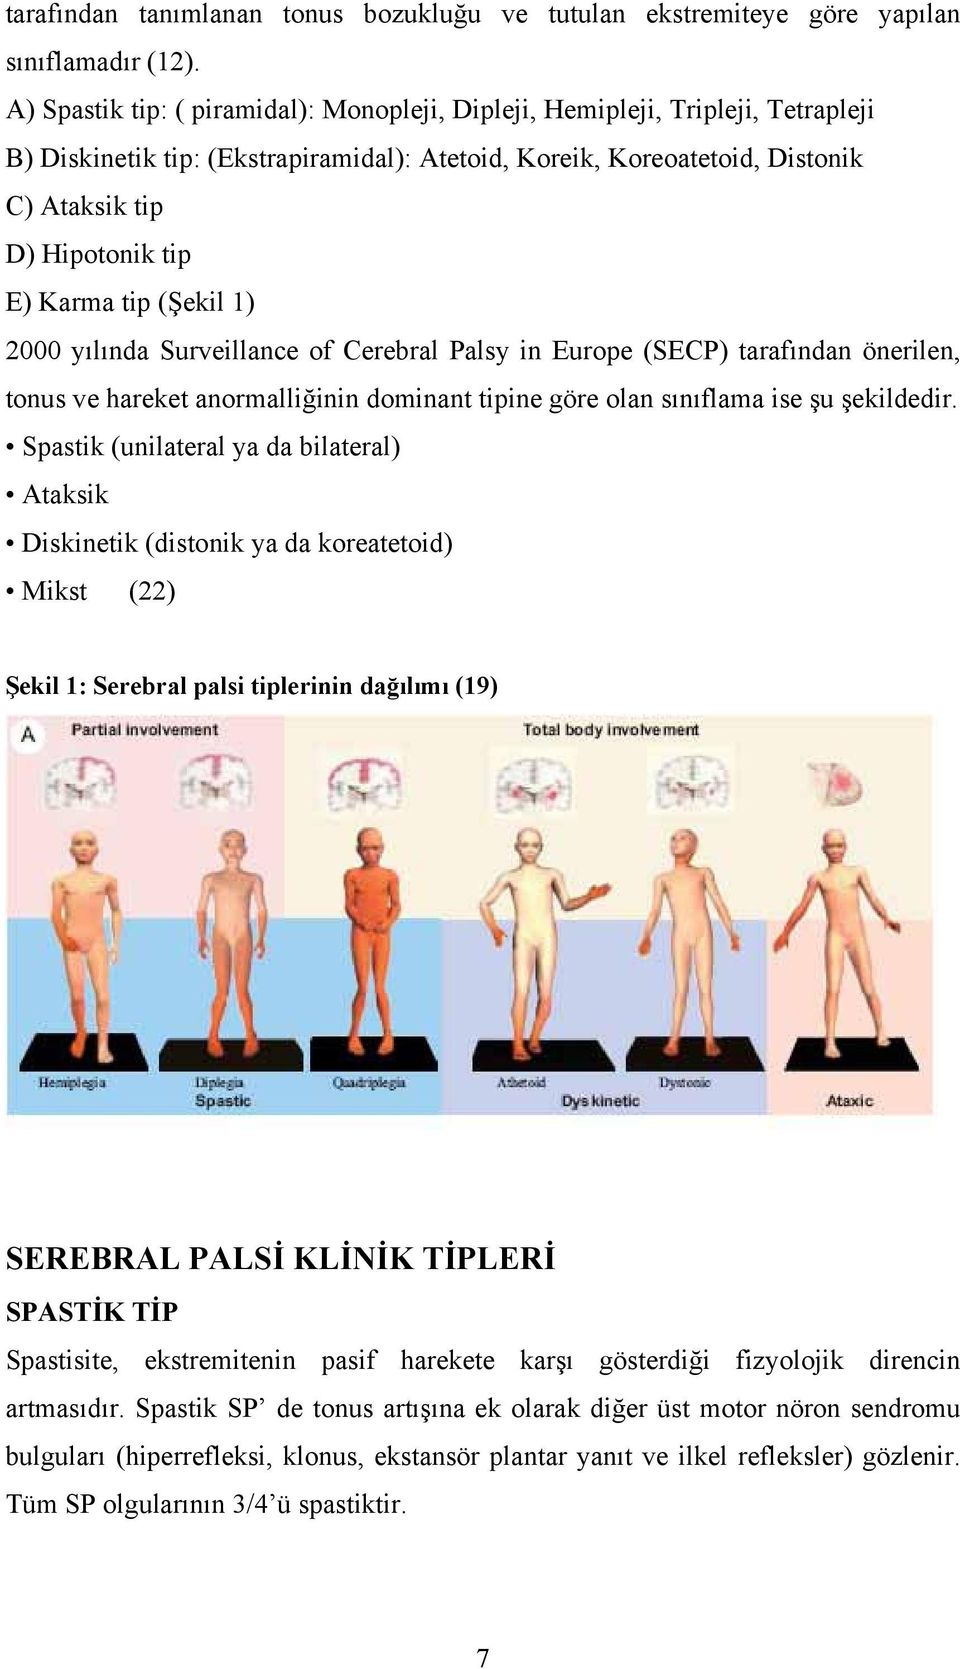 Karma tip (Şekil 1) 2000 yılında Surveillance of Cerebral Palsy in Europe (SECP) tarafından önerilen, tonus ve hareket anormalliğinin dominant tipine göre olan sınıflama ise şu şekildedir.